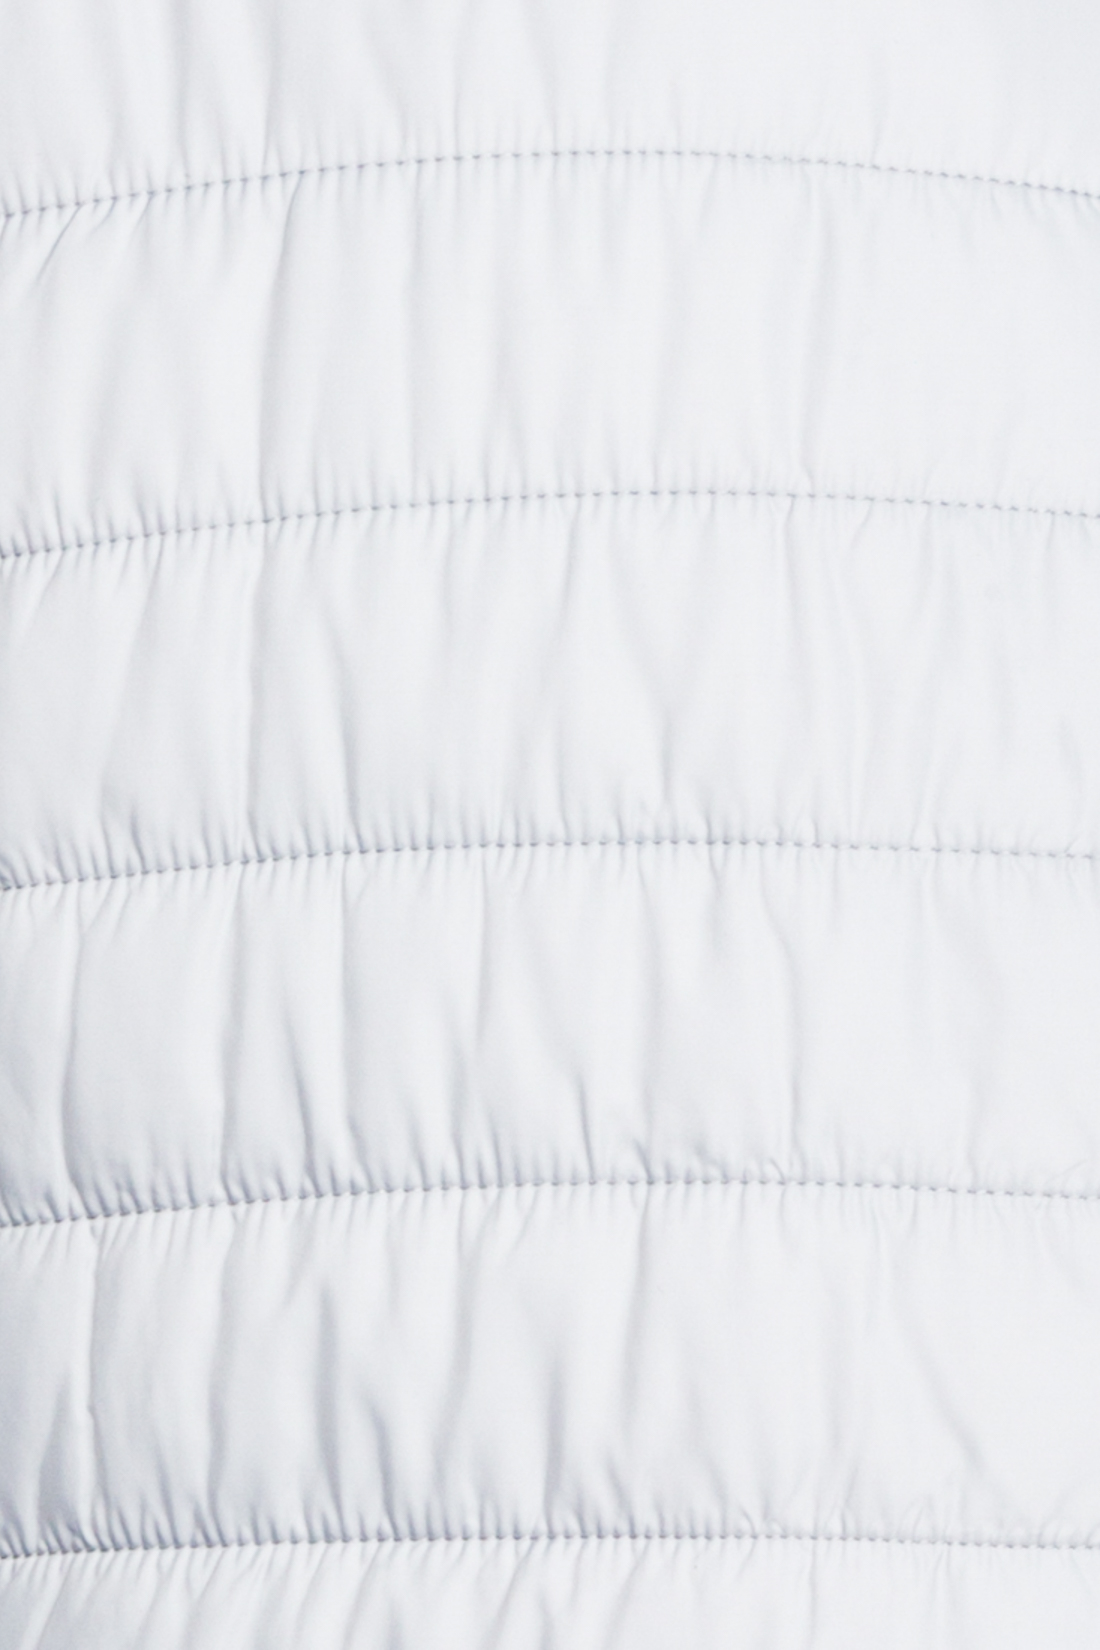 Базовая куртка на молнии (арт. baon B537201), размер M, цвет белый Базовая куртка на молнии (арт. baon B537201) - фото 3